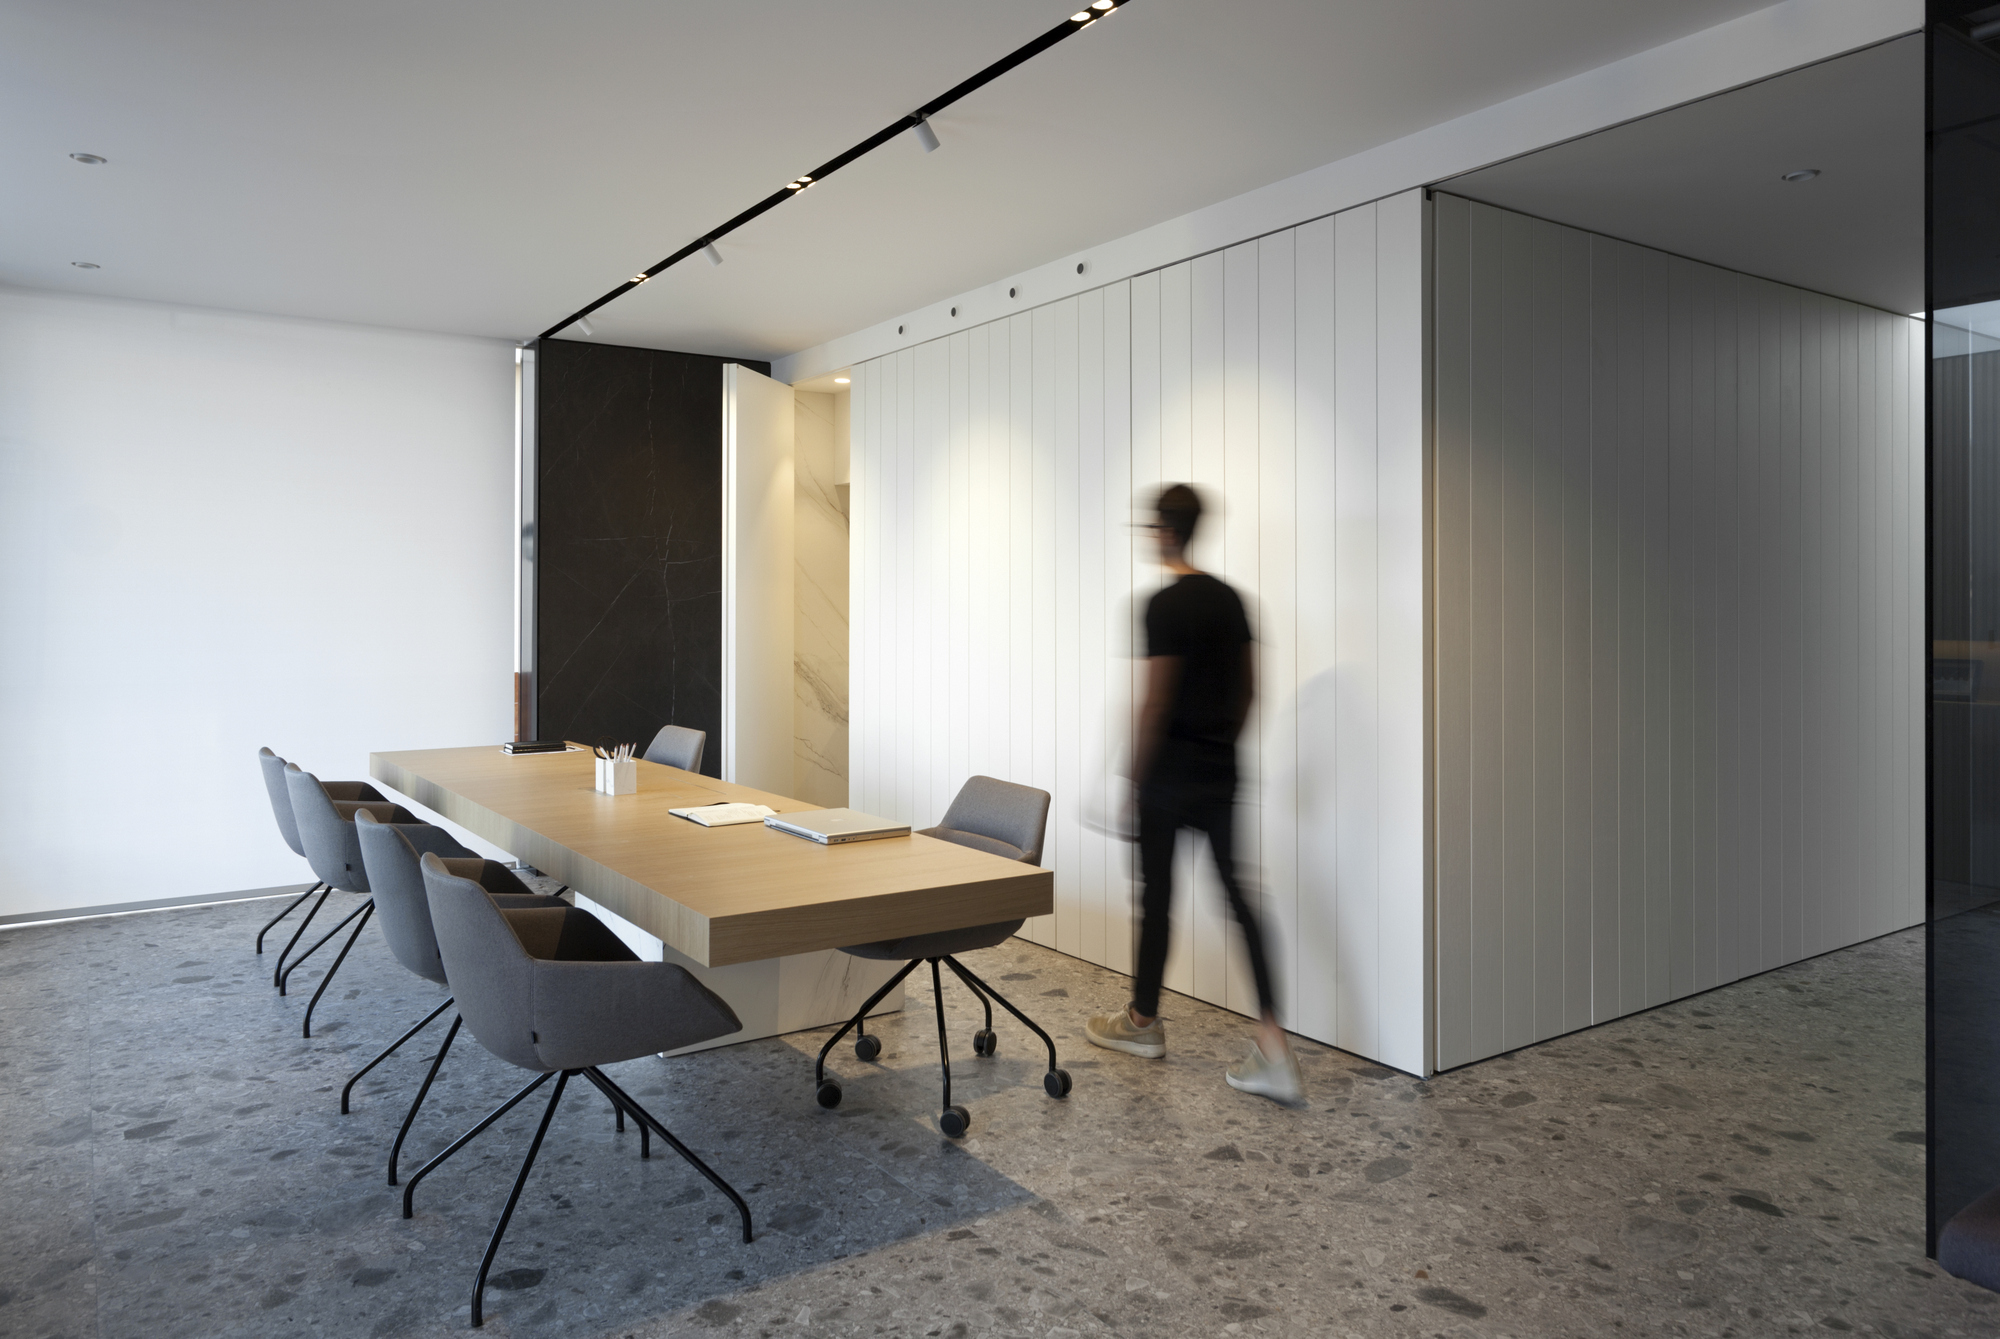 图片[6]|Allinone房地产集团办公室-穆尔西亚|ART-Arrakis | 建筑室内设计的创新与灵感